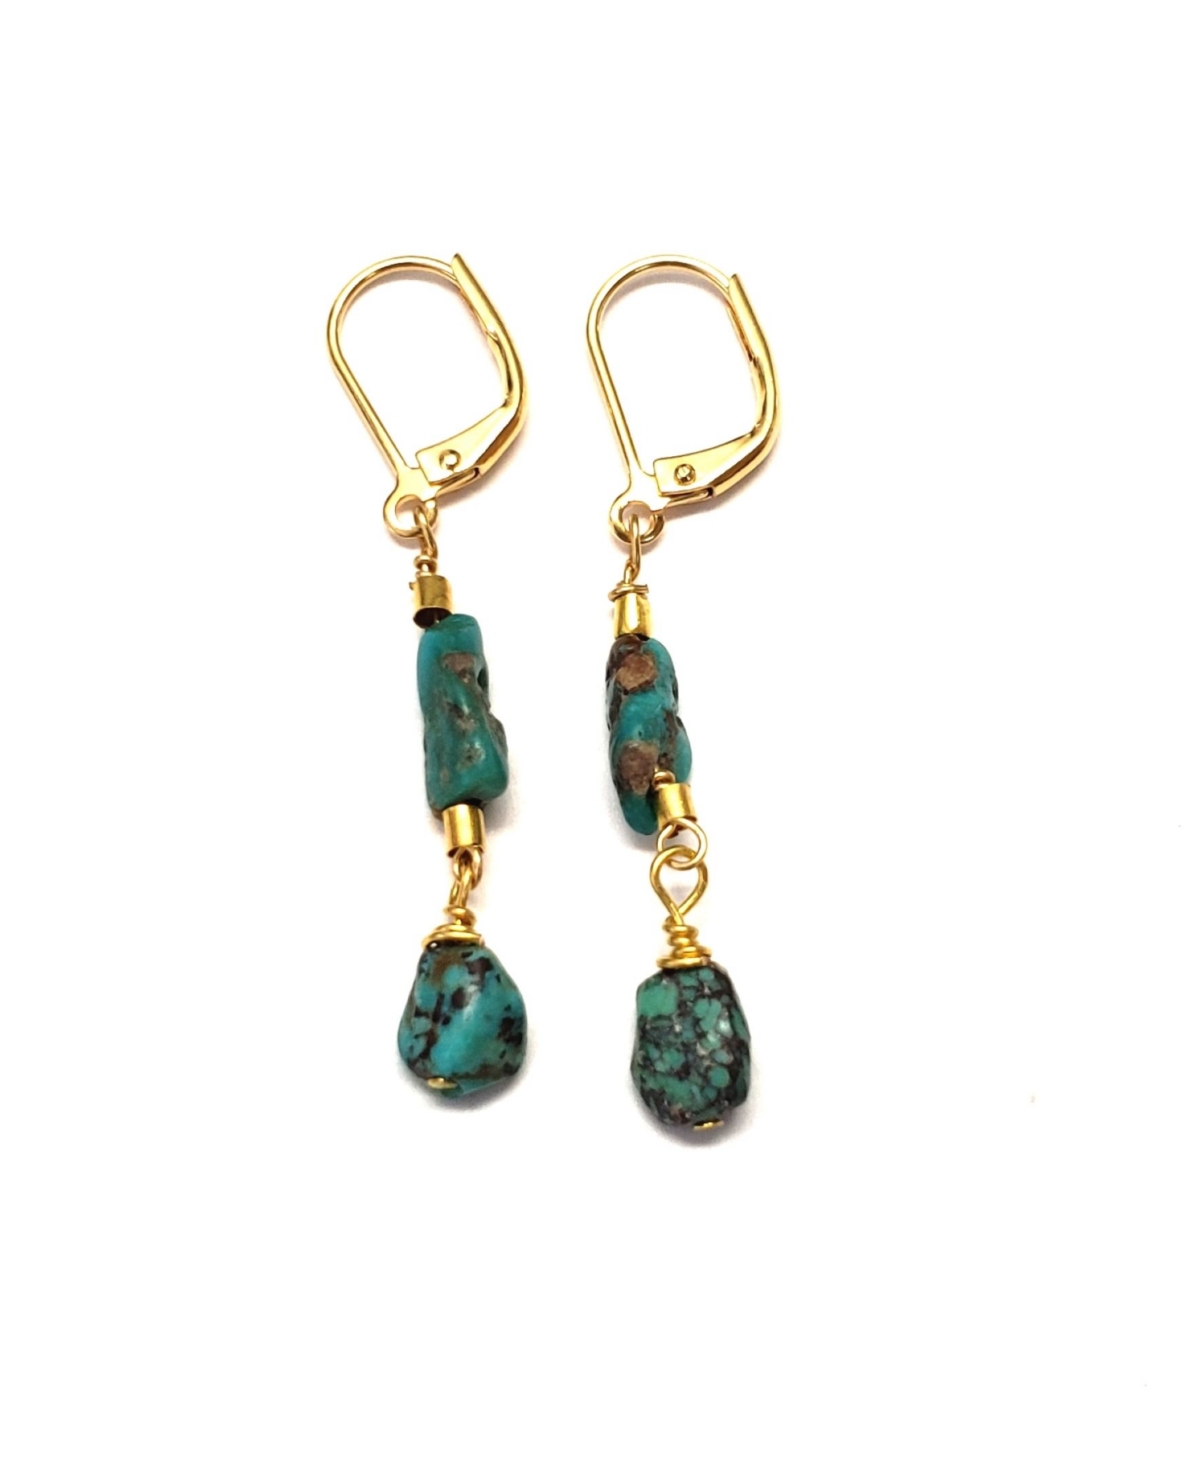 Jala Earrings - Turquoise